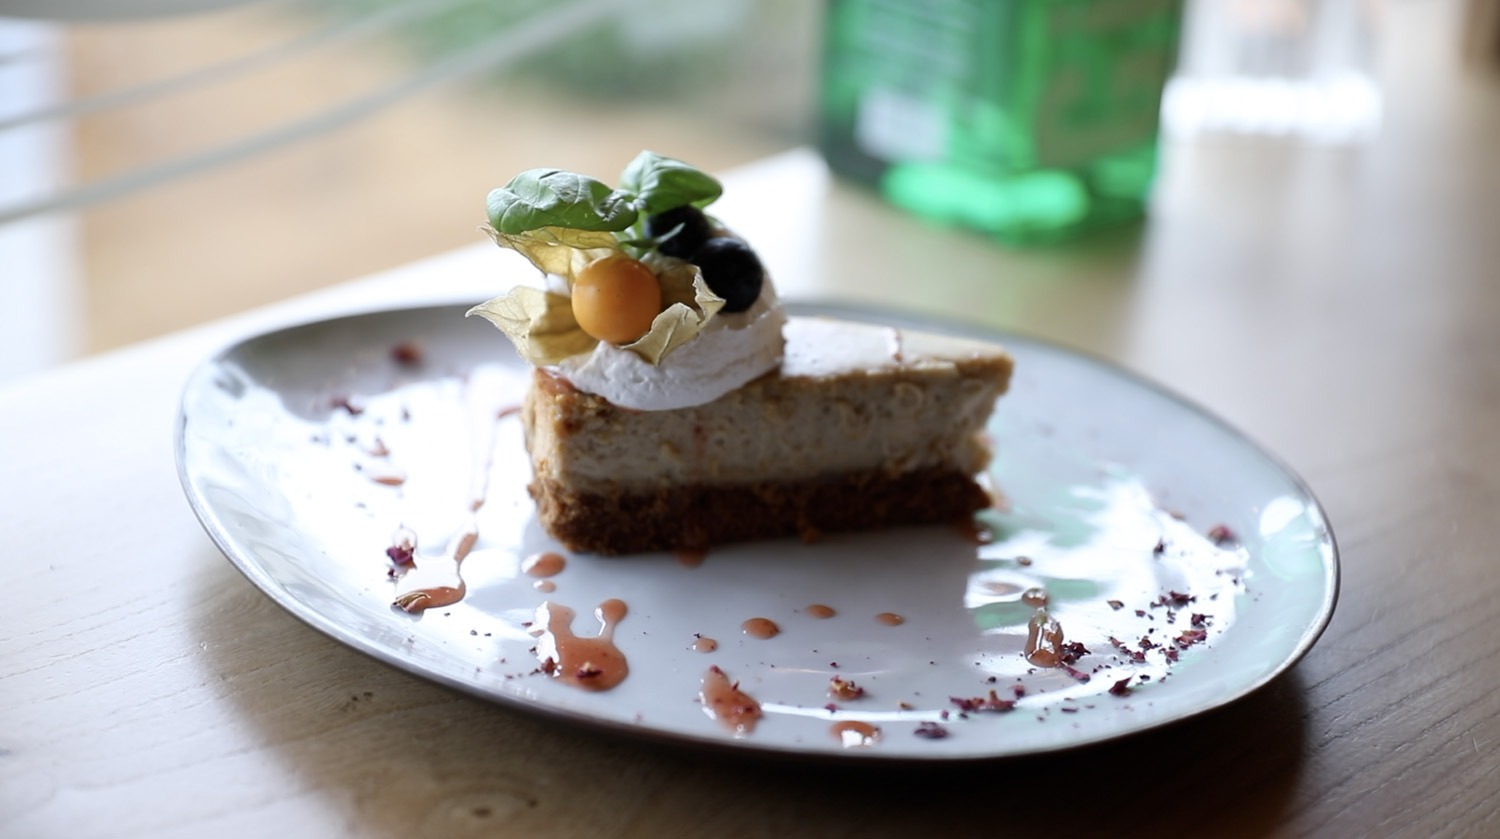 Deze cheesecake op basis van noten is subliem opgemaakt met vegan crème, basilicum en bessen.